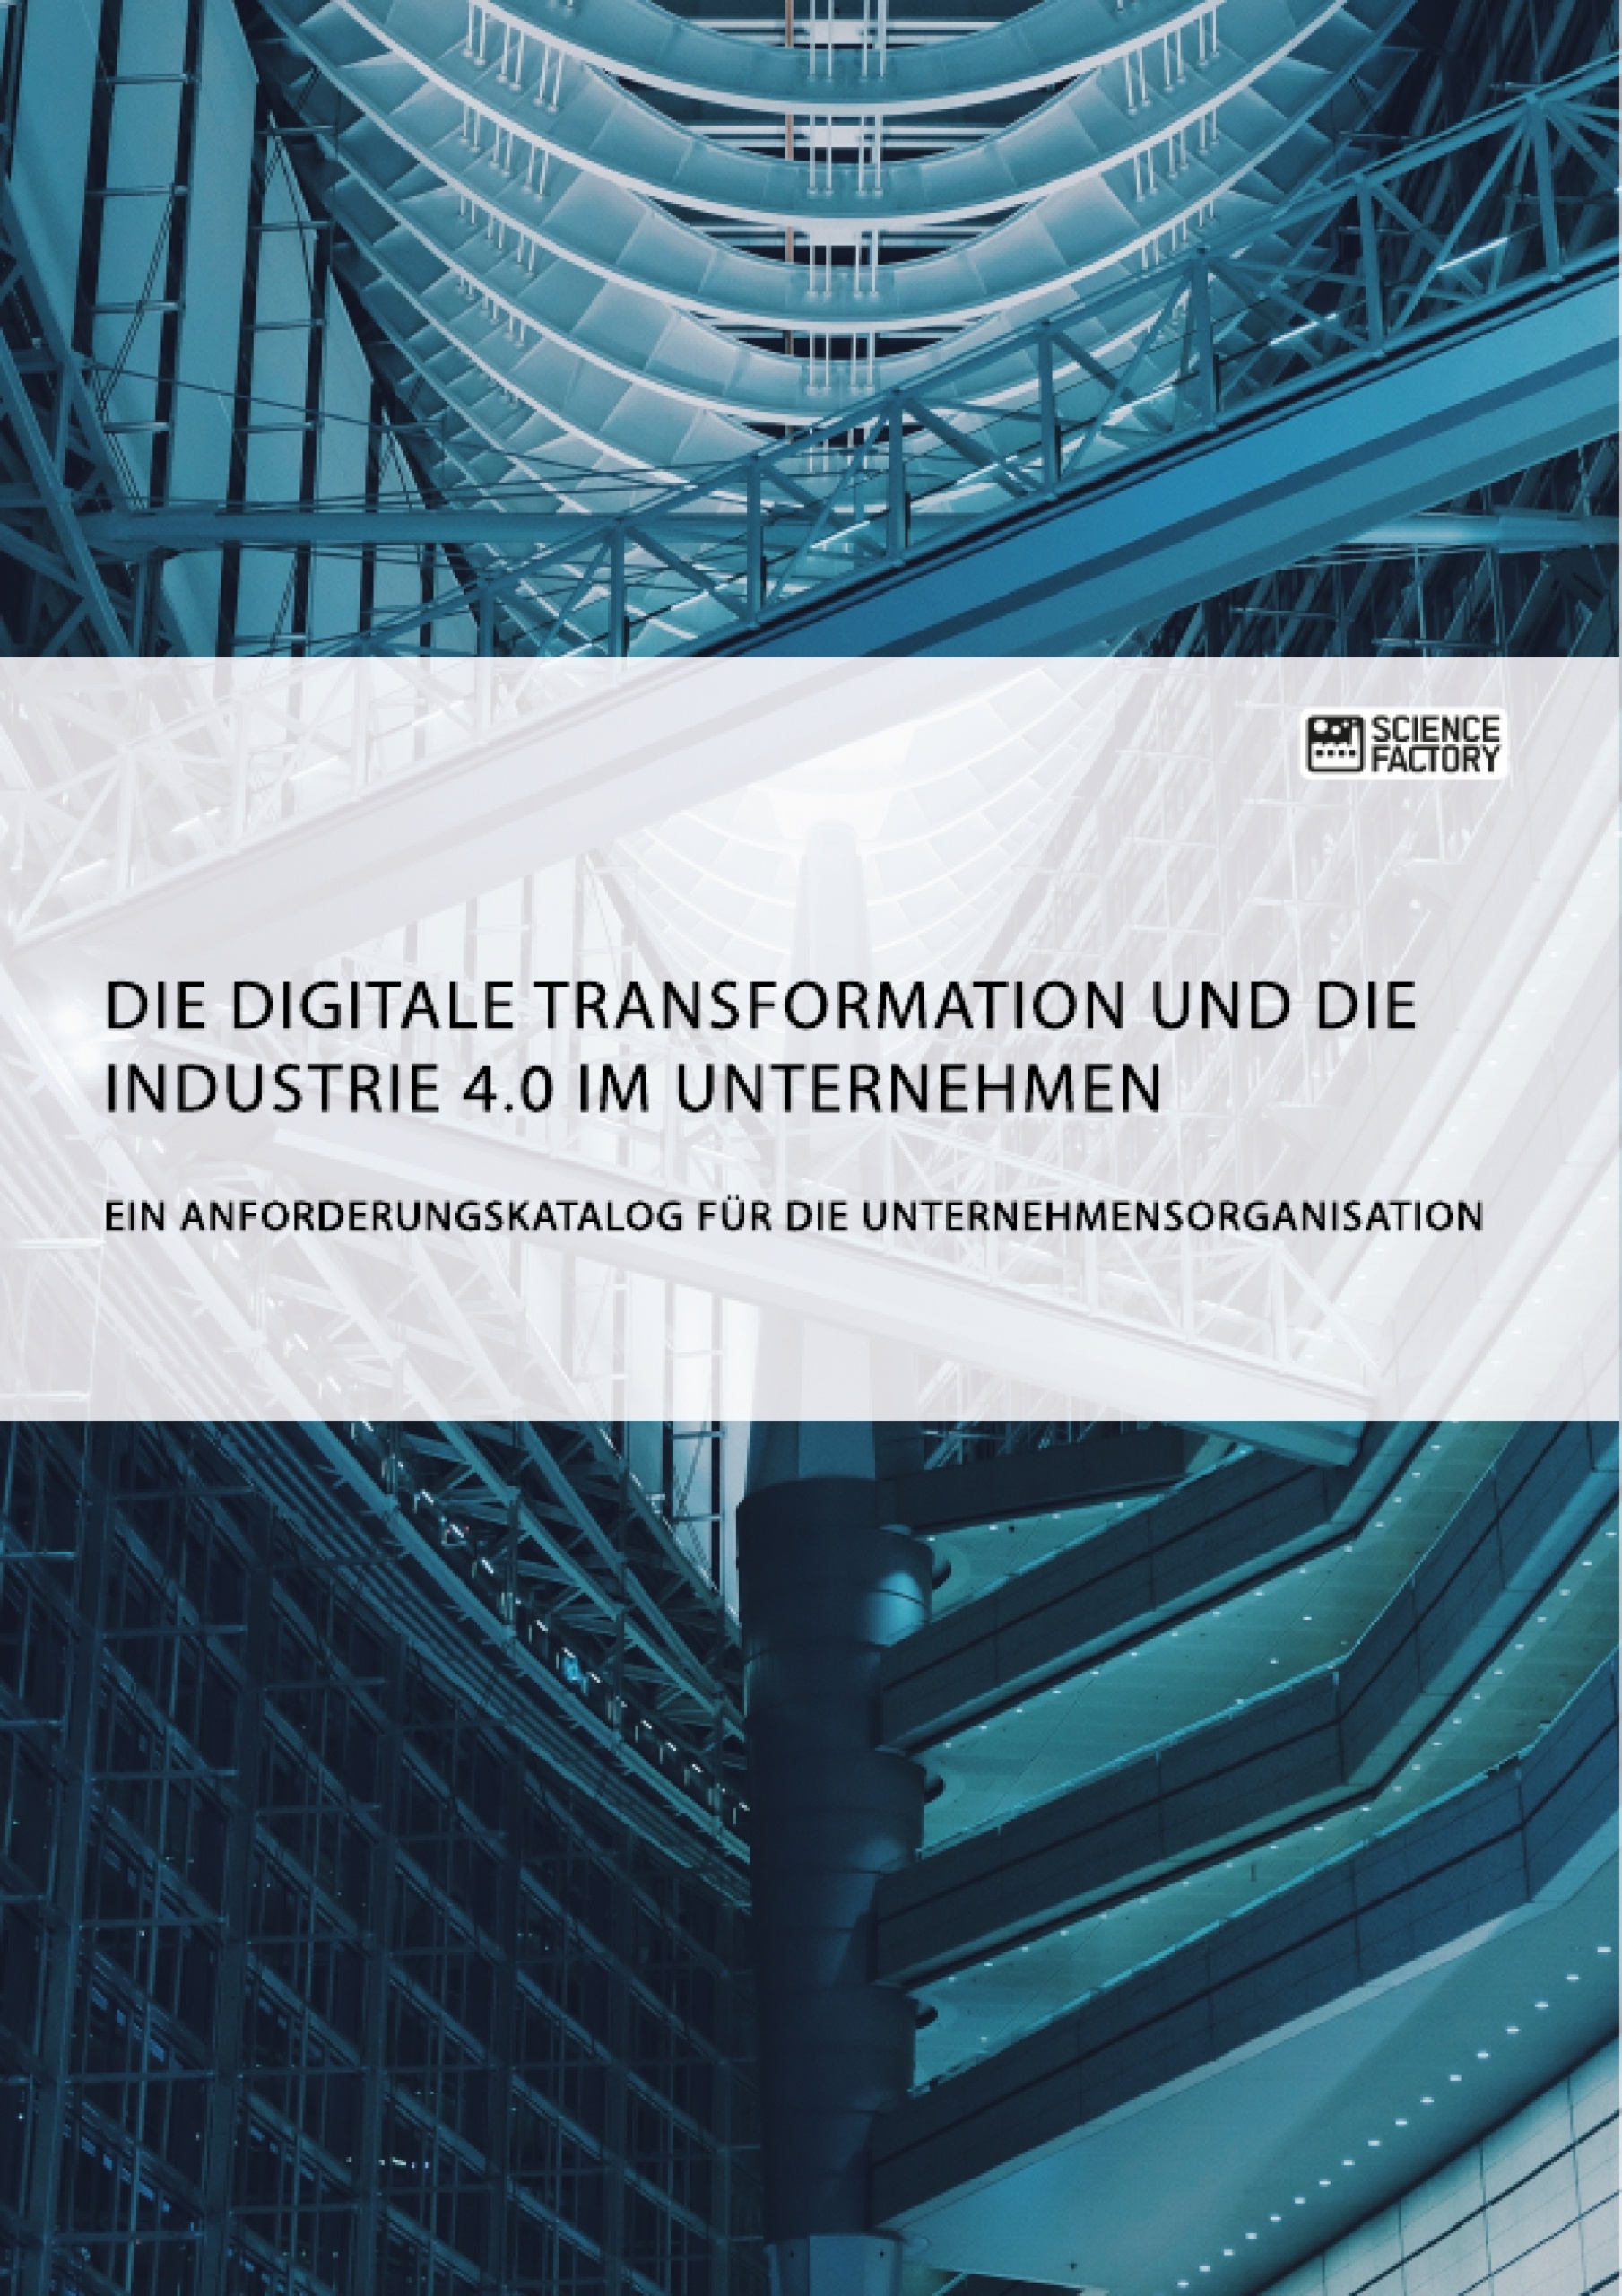 Title: Die digitale Transformation und die Industrie 4.0 im Unternehmen